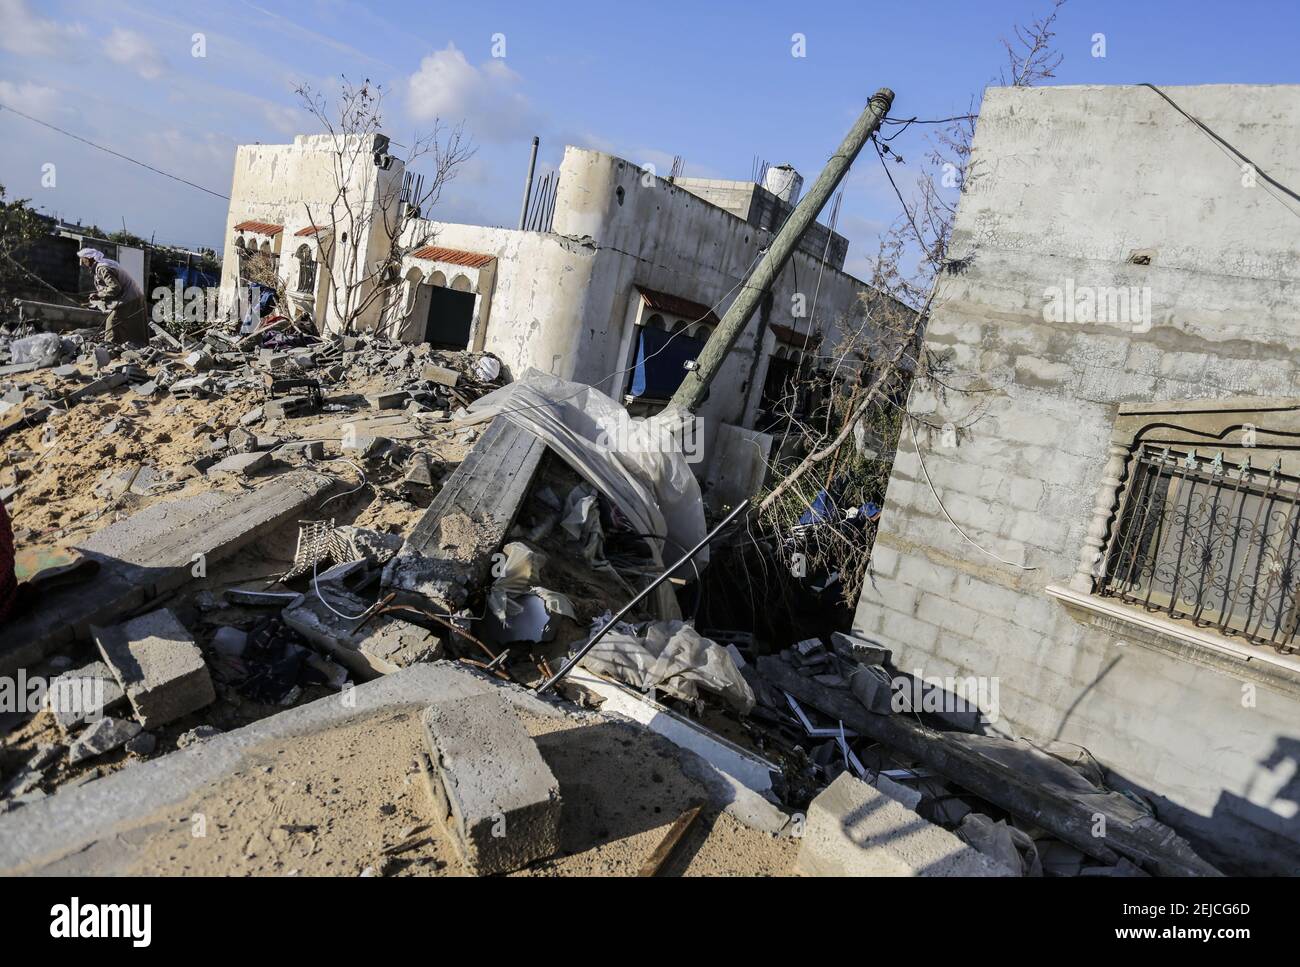 Escombros en la casa destruida de Hamouda Abu Amra. La familia Abu Umrah, compuesta por 19 personas, perdió su casa de cinco pisos después de una incursión israelí en Gaza el 13 de noviembre de 2019. (Foto de Mahmoud Issa / SOPA Images/Sipa USA) Foto de stock